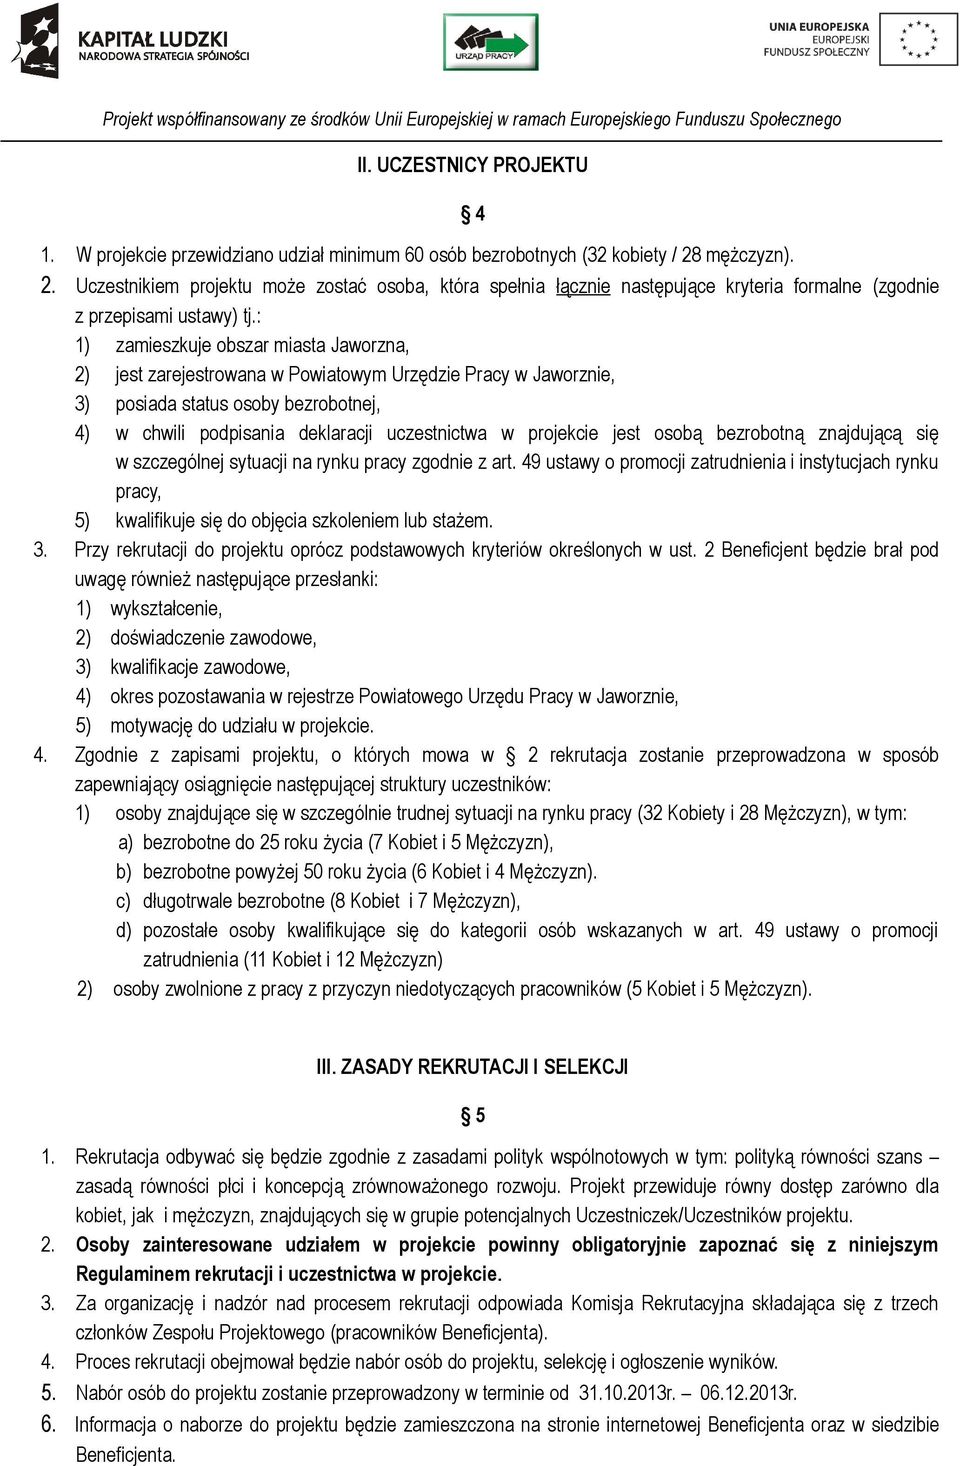 : 1) zamieszkuje obszar miasta Jaworzna, 2) jest zarejestrowana w Powiatowym Urzędzie Pracy w Jaworznie, 3) posiada status osoby bezrobotnej, 4) w chwili podpisania deklaracji uczestnictwa w